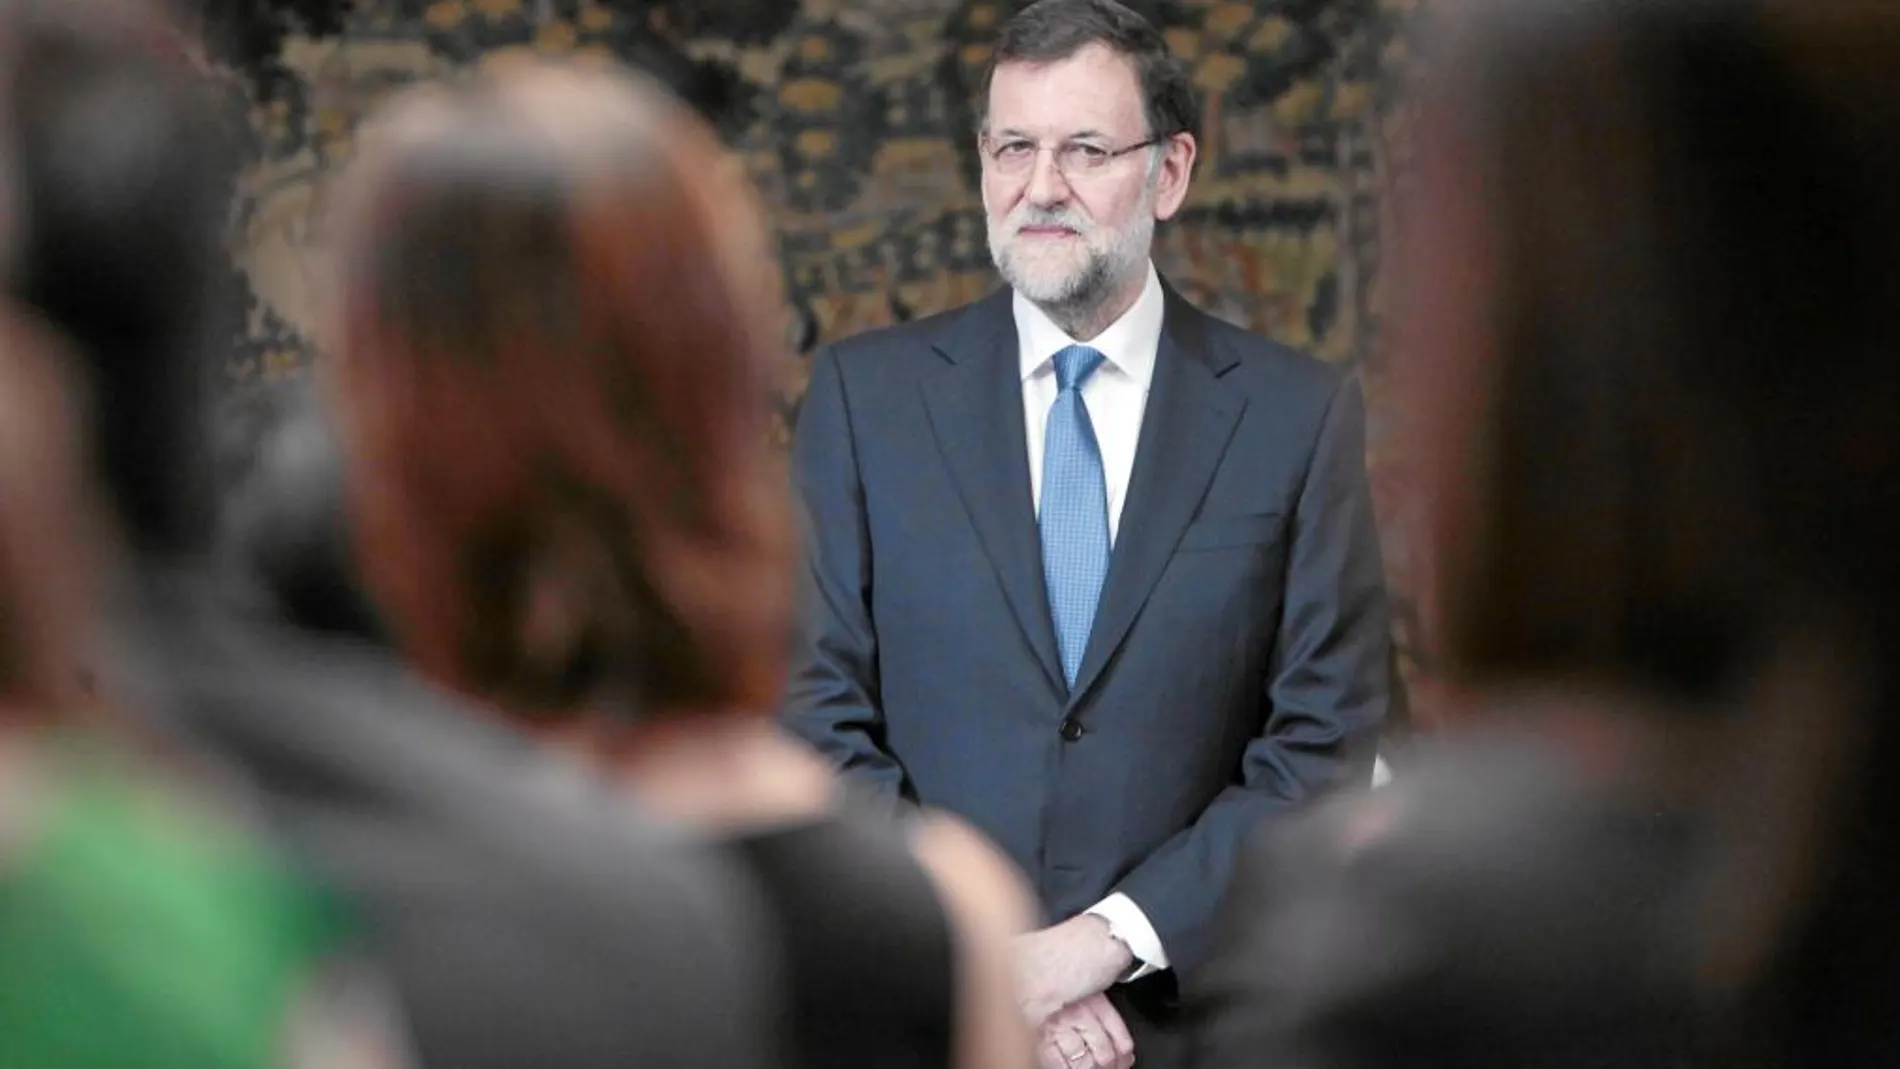 El presidente del Gobierno, Mariano Rajoy, retoma su agenda política hoy